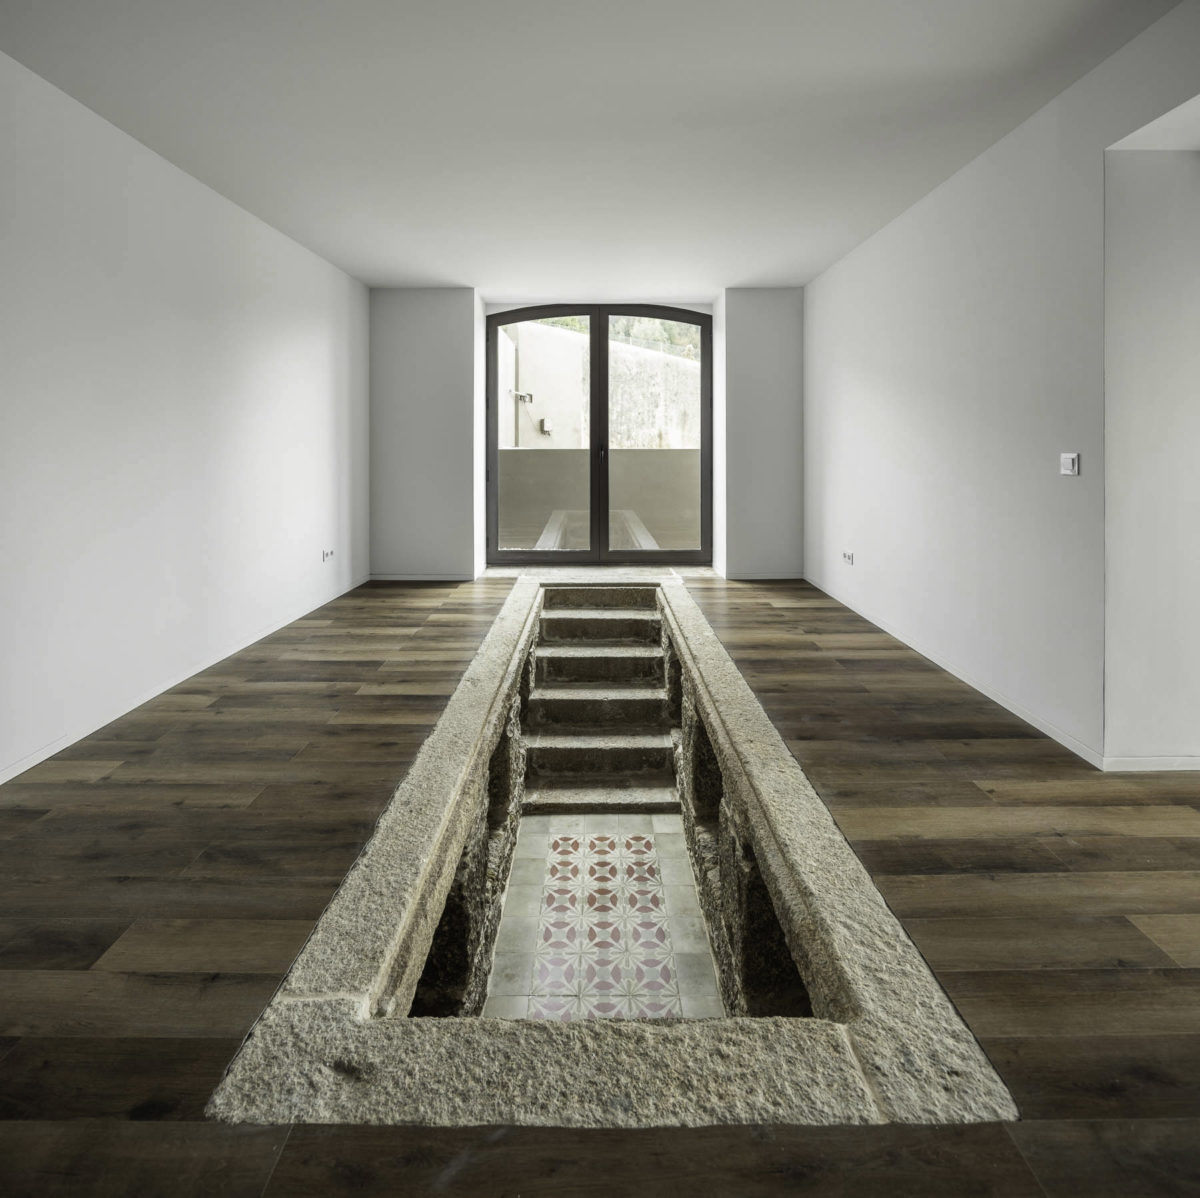 Zachovaná hydraulická mozaika vnořena dřevěné podlahy